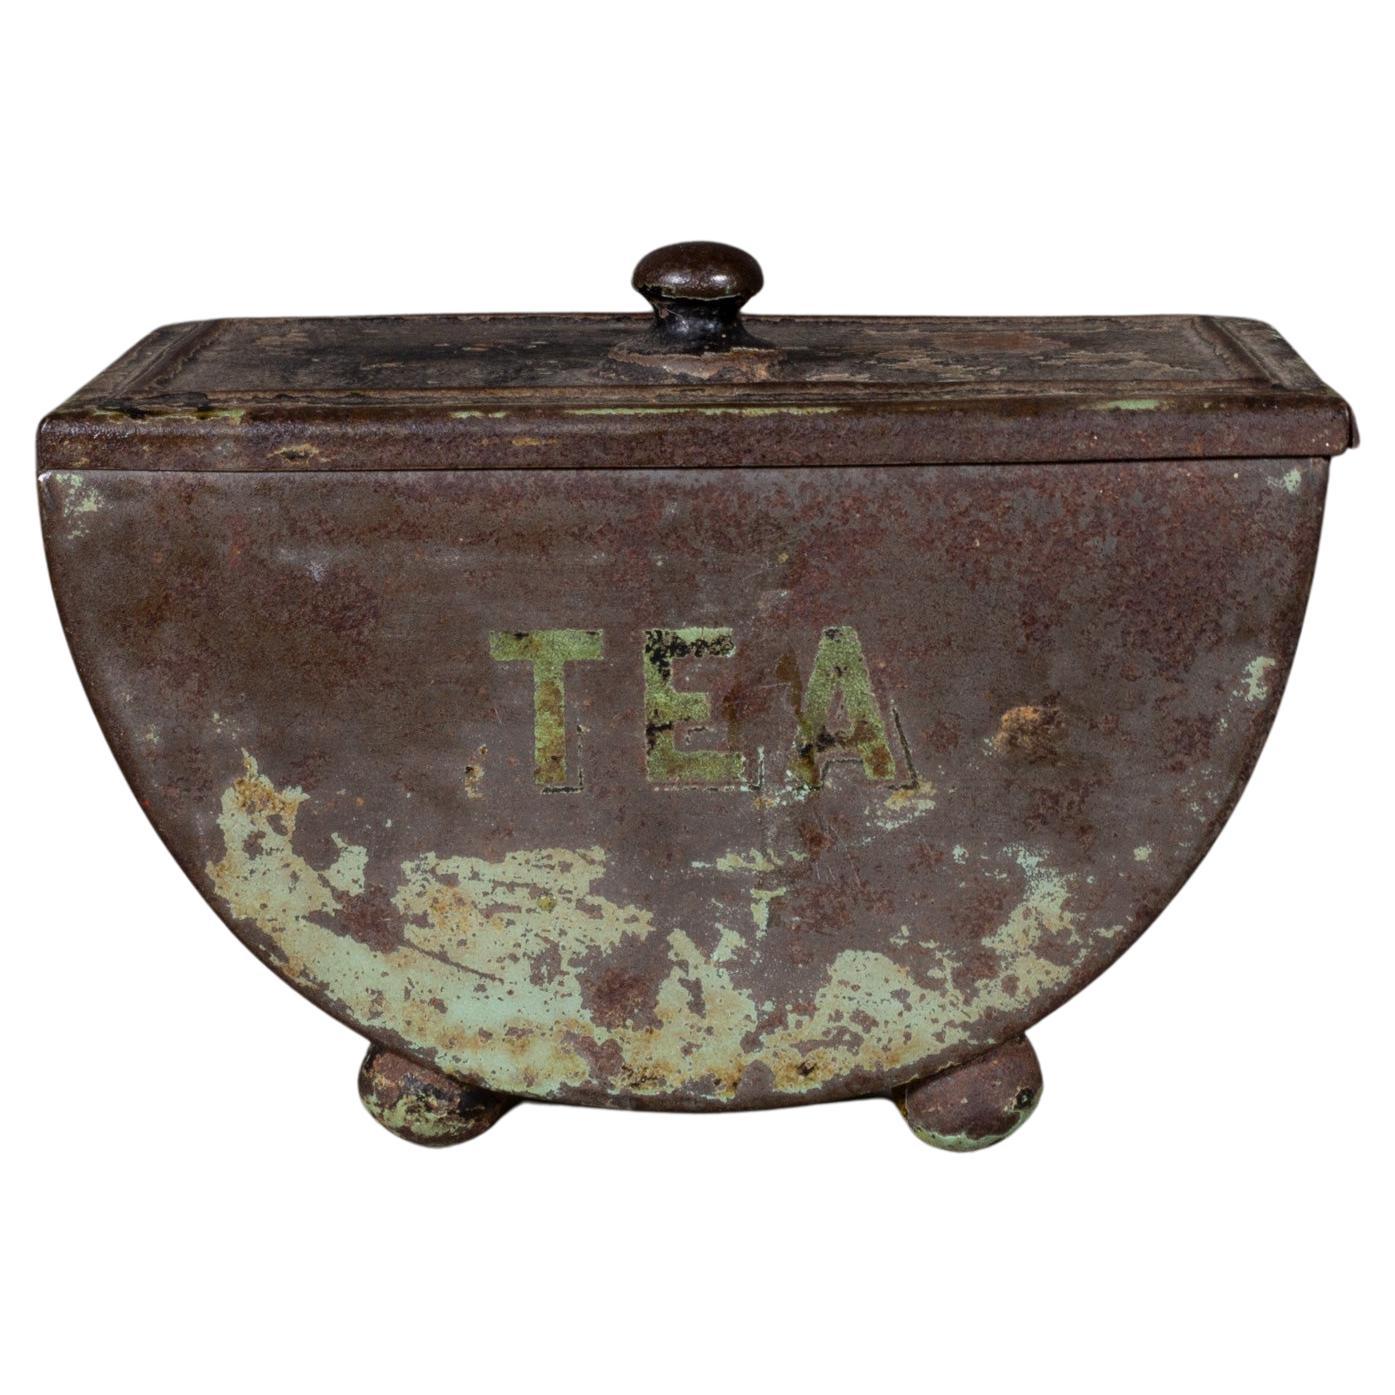 19e s. English Toleware Tea Bin c.mid-1800s (FREE SHIPPING)